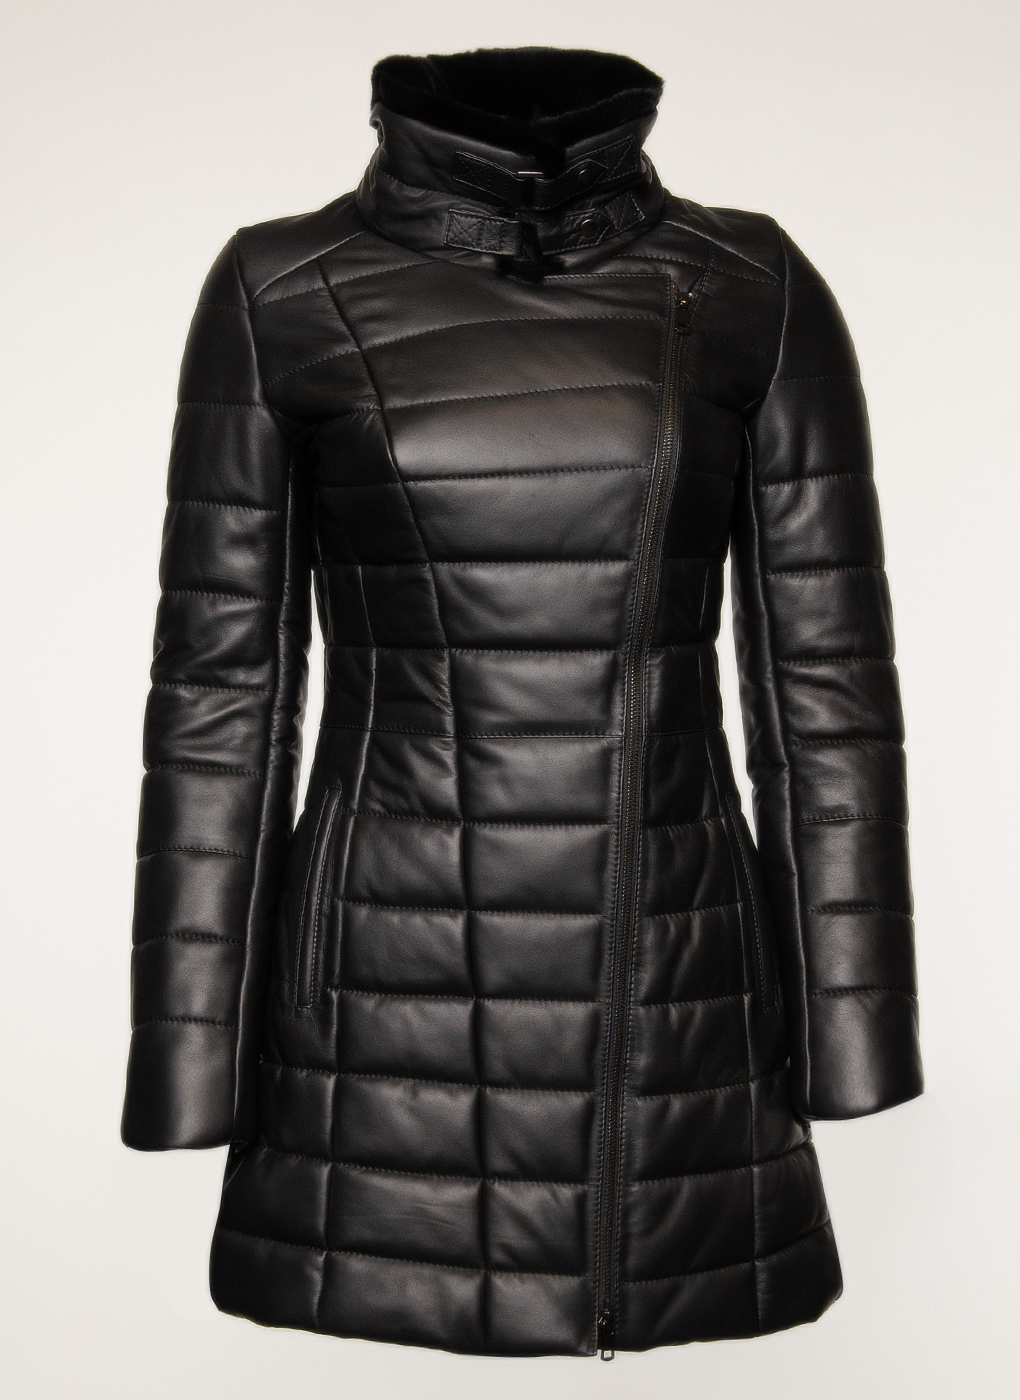 Кожаная куртка женская Imperiafabrik 1633772 черная 46 RU